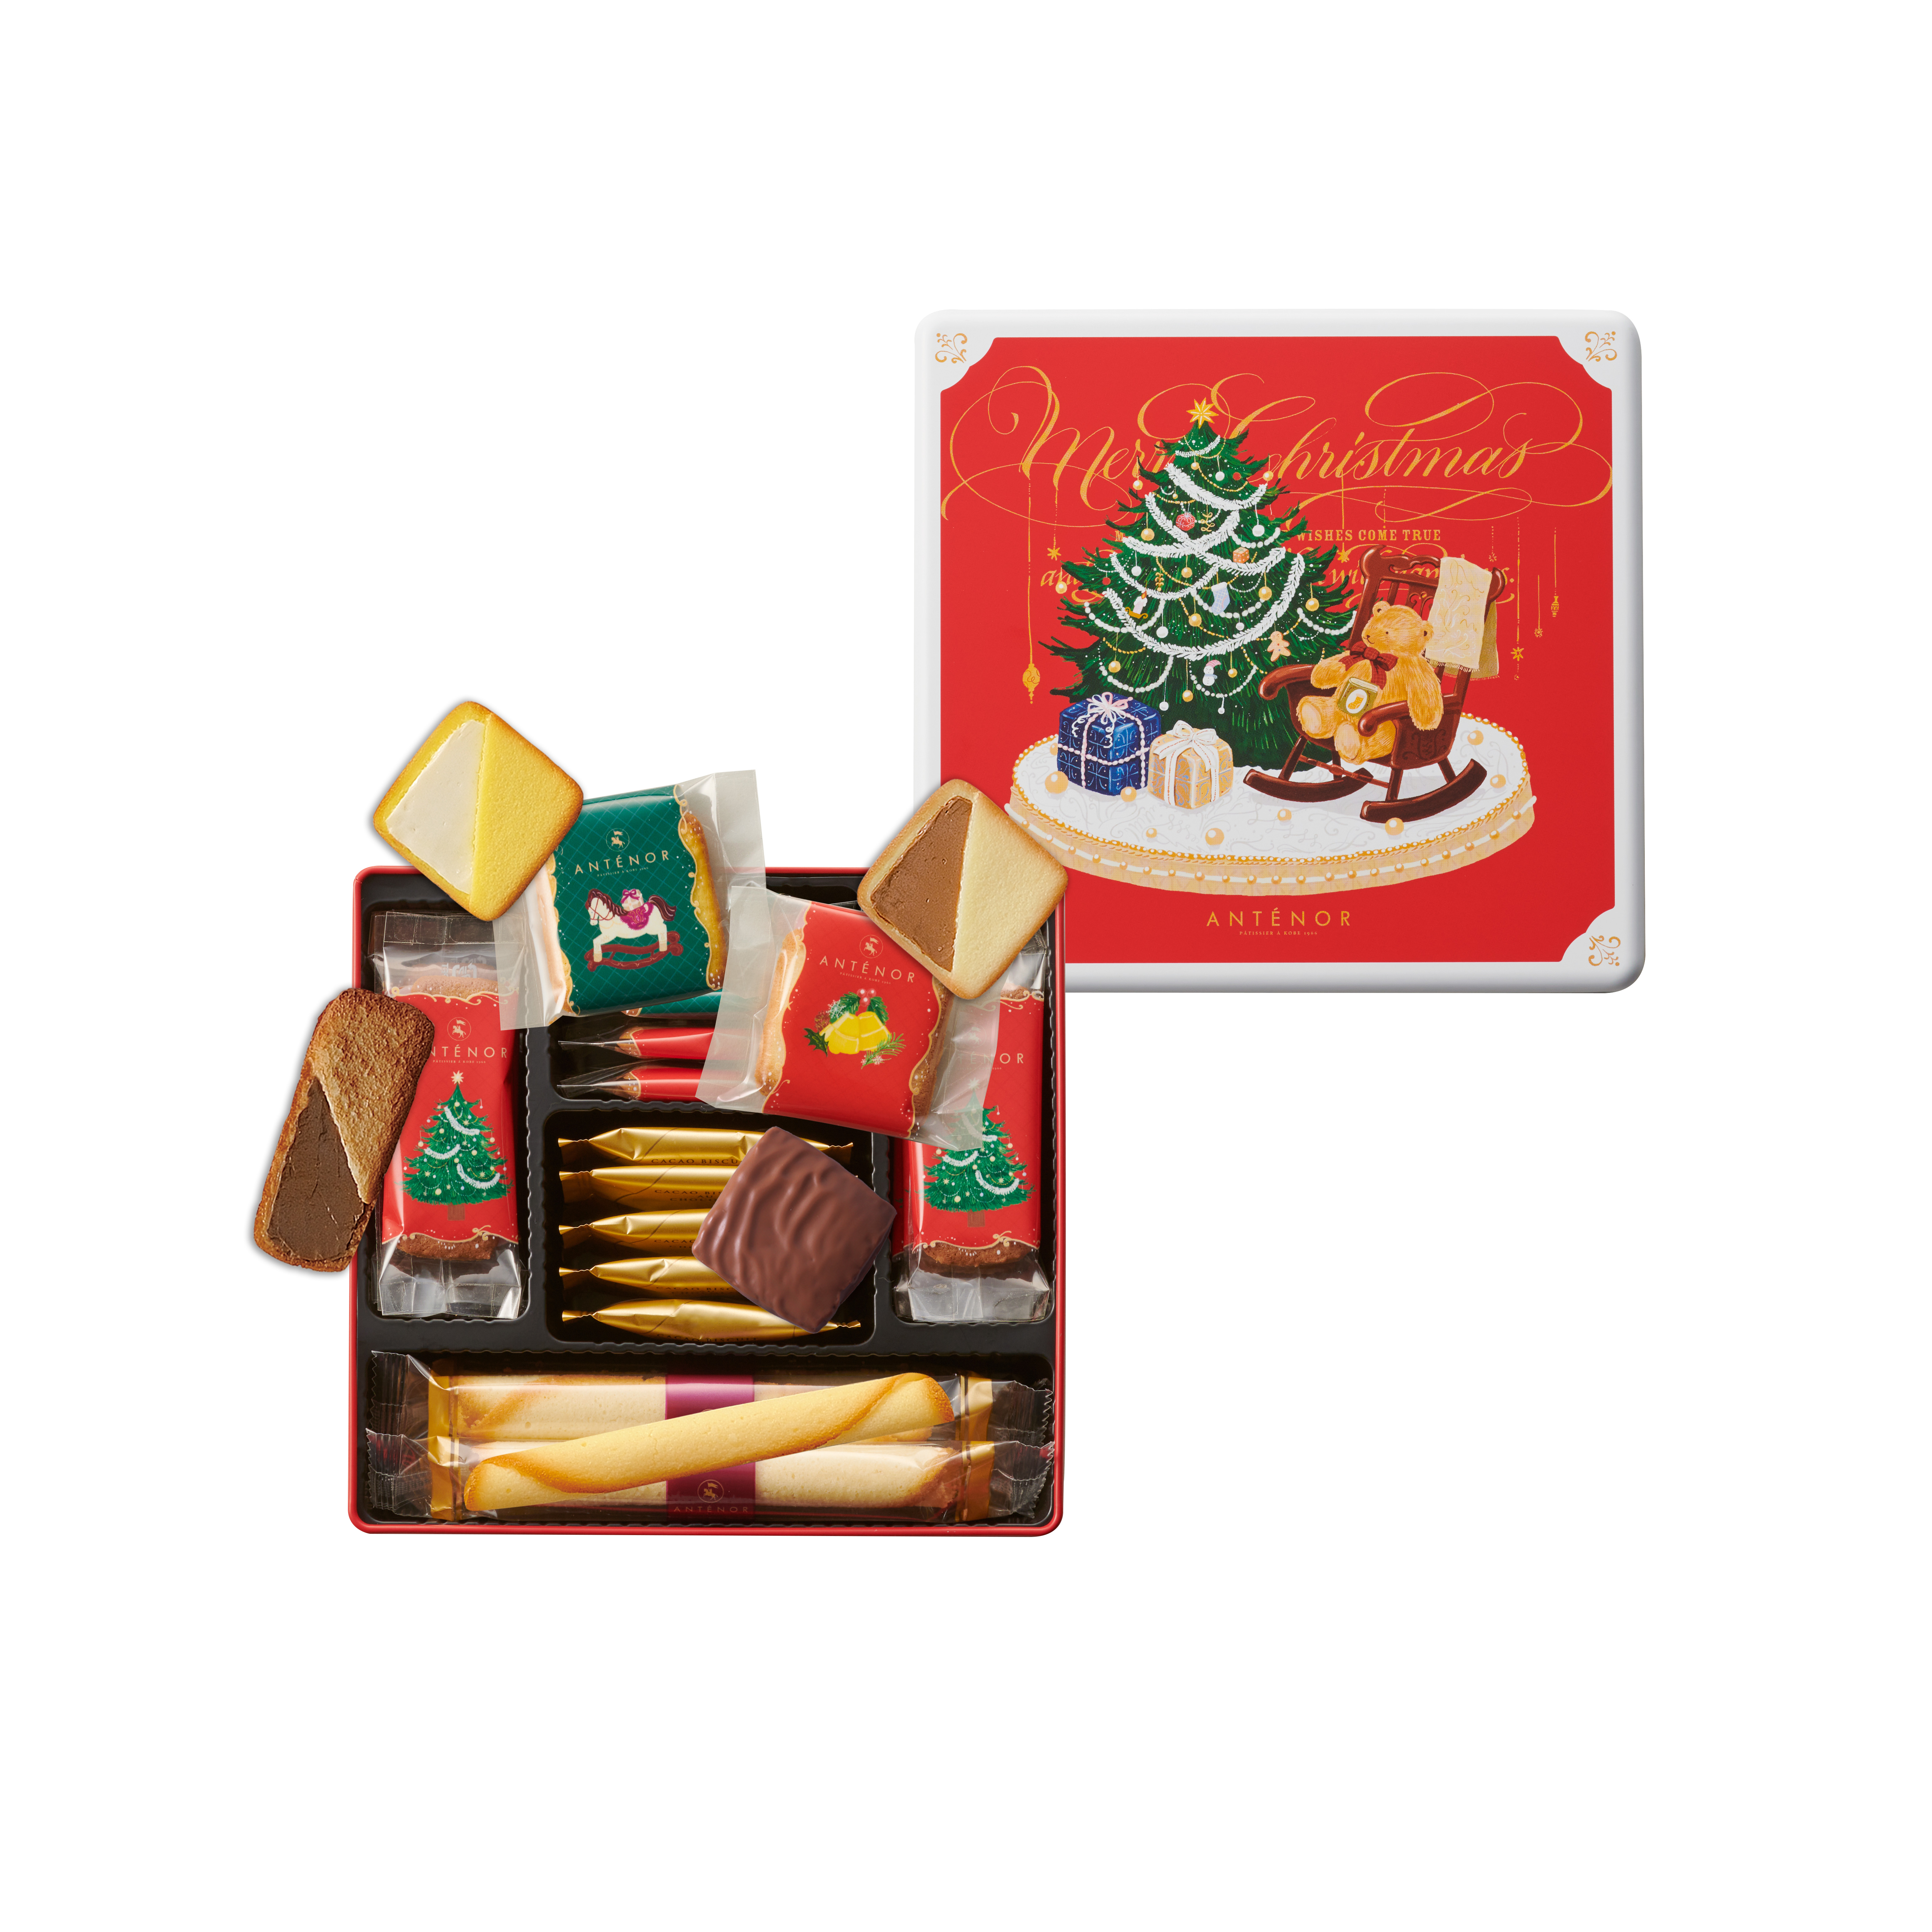 【アンテノール】 クリスマス限定クッキー缶を新発売！「おもちゃ達が踊り出すクリスマス」をテーマに、かわいい贈り物が勢揃いのサブ画像2